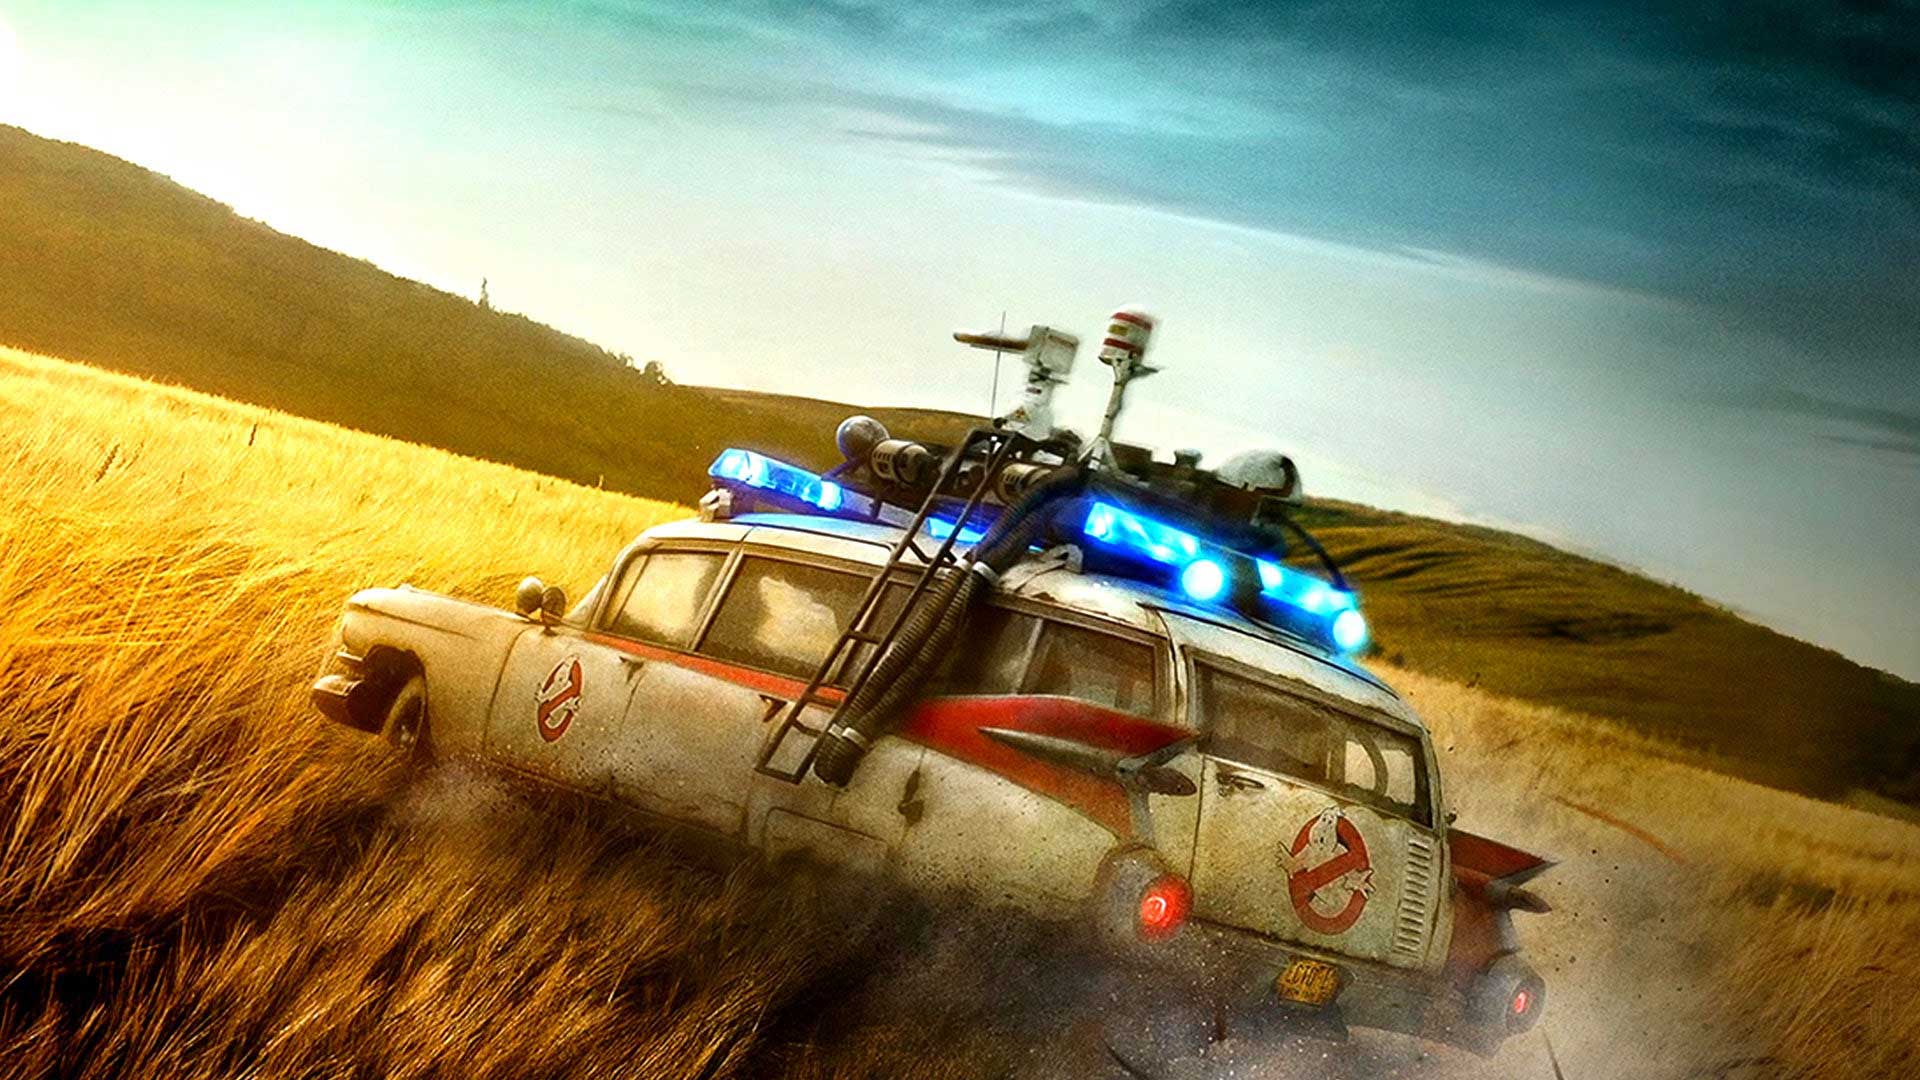 ماشین معروف شکارچیان روح در فیلم Ghostbusters: Afterlife سونی و کلمبپیا پیکچرز، یکی از بهترین فیلم های ۲۰۲۱ میان گندم زار